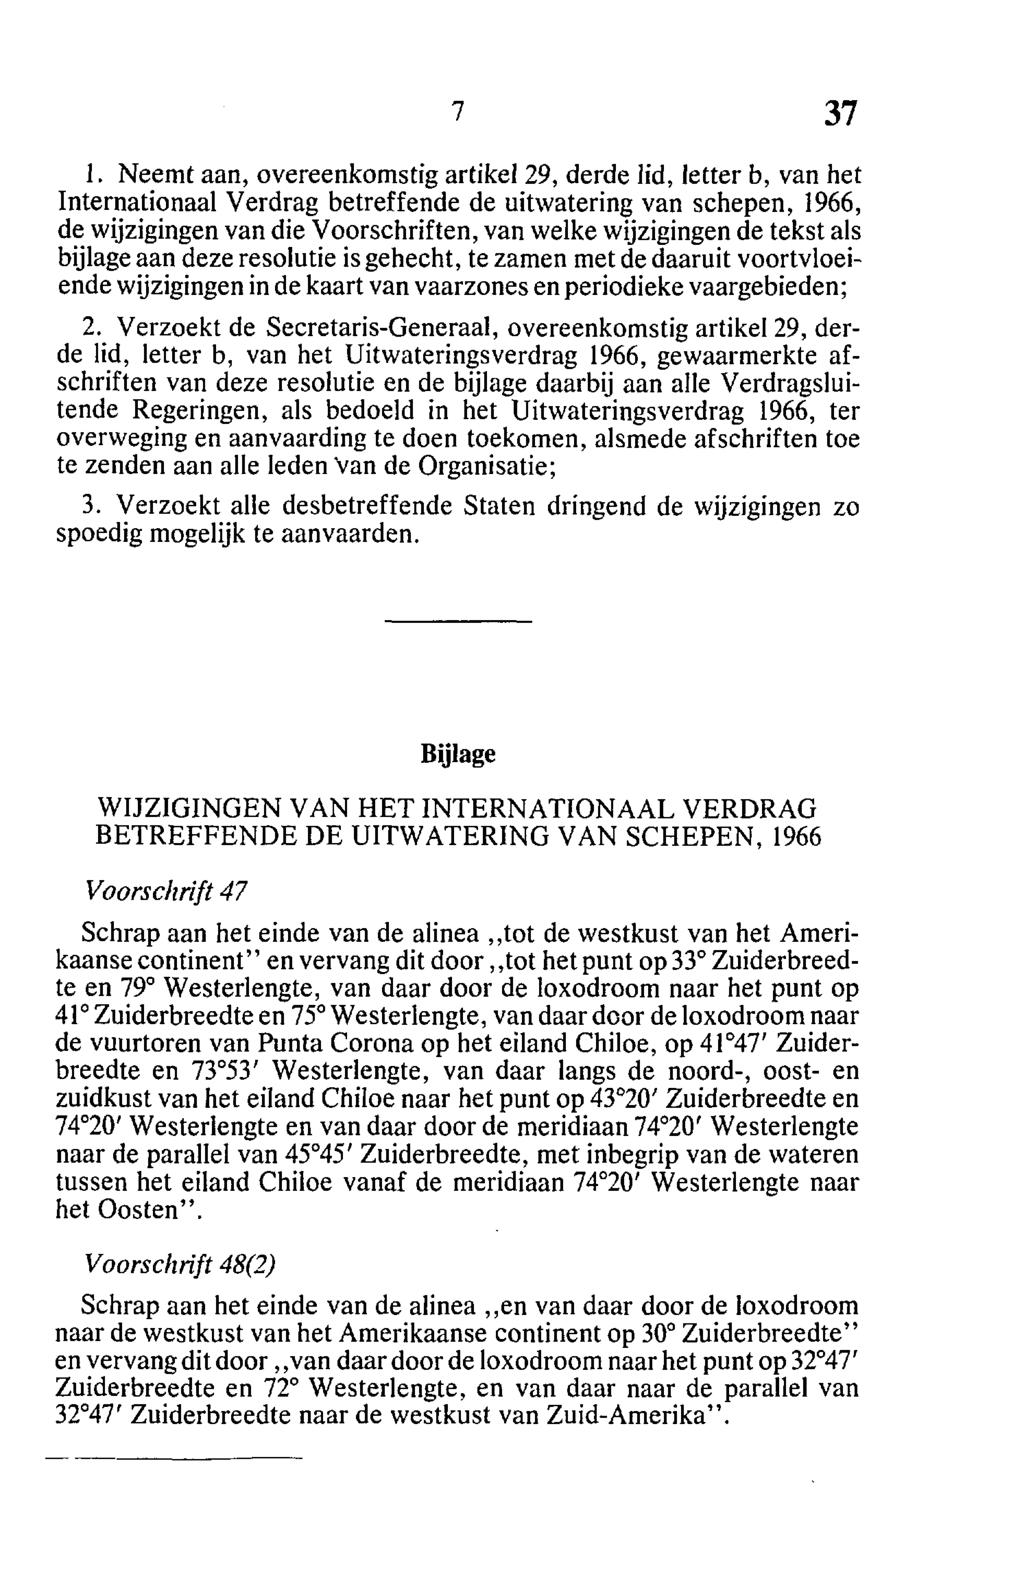 1. Neemt aan, overeenkomstig artikel 29, derde lid, letter b, van het Internationaal Verdrag betreffende de uitwatering van schepen, 1966, de wijzigingen van die Voorschriften, van welke wijzigingen